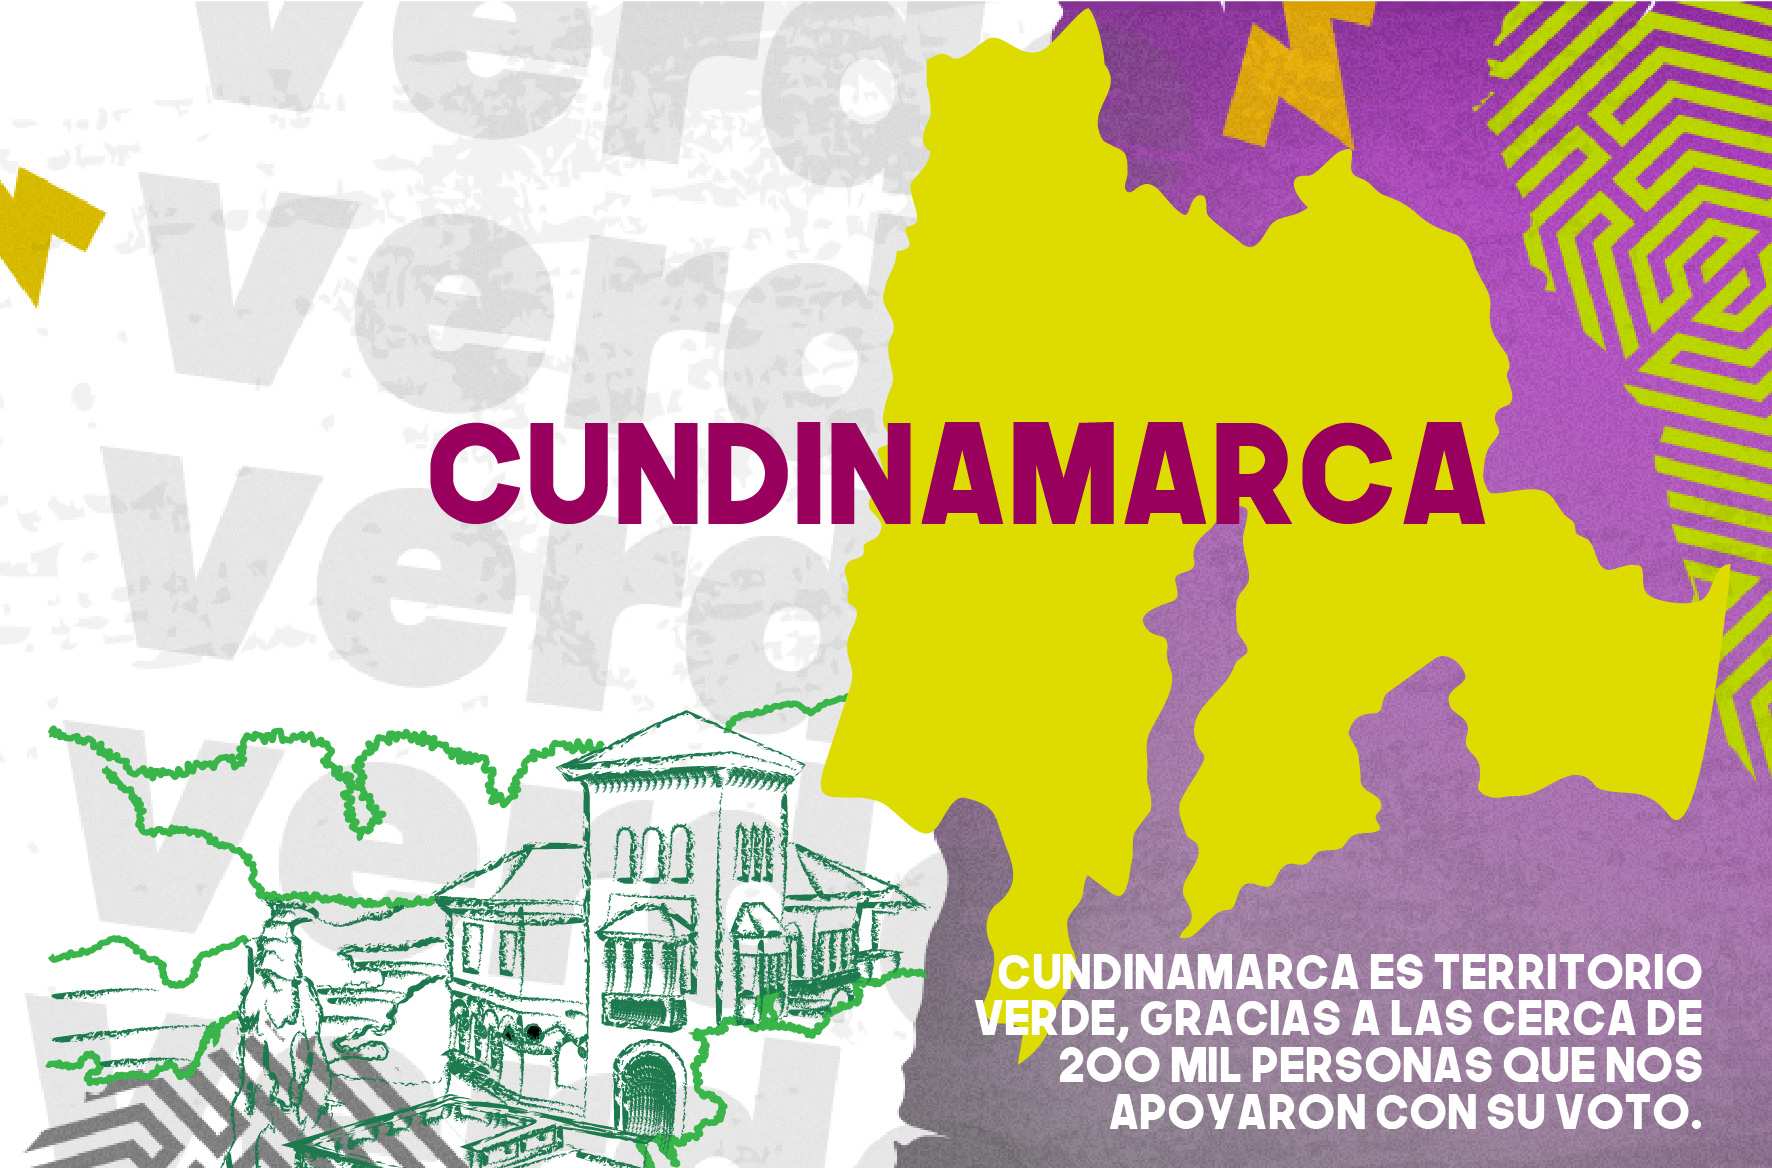 Cundinamarca es territorio Verde, gracias a las cerca de 200 mil personas que nos apoyaron con su voto